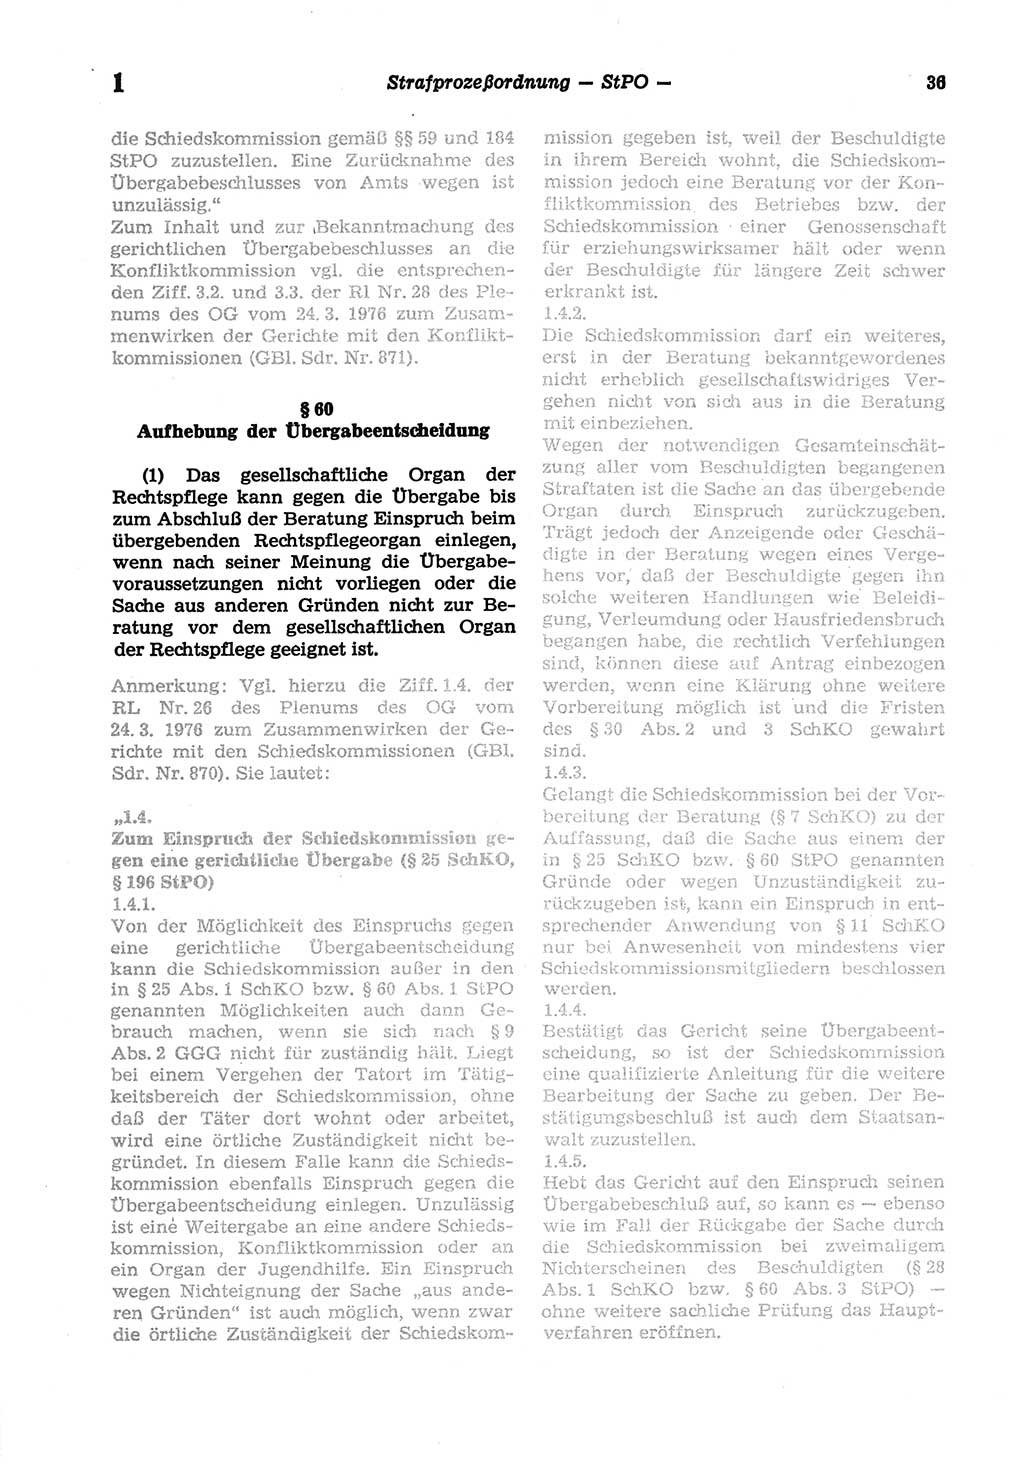 Strafprozeßordnung (StPO) der Deutschen Demokratischen Republik (DDR) sowie angrenzende Gesetze und Bestimmungen 1977, Seite 36 (StPO DDR Ges. Best. 1977, S. 36)